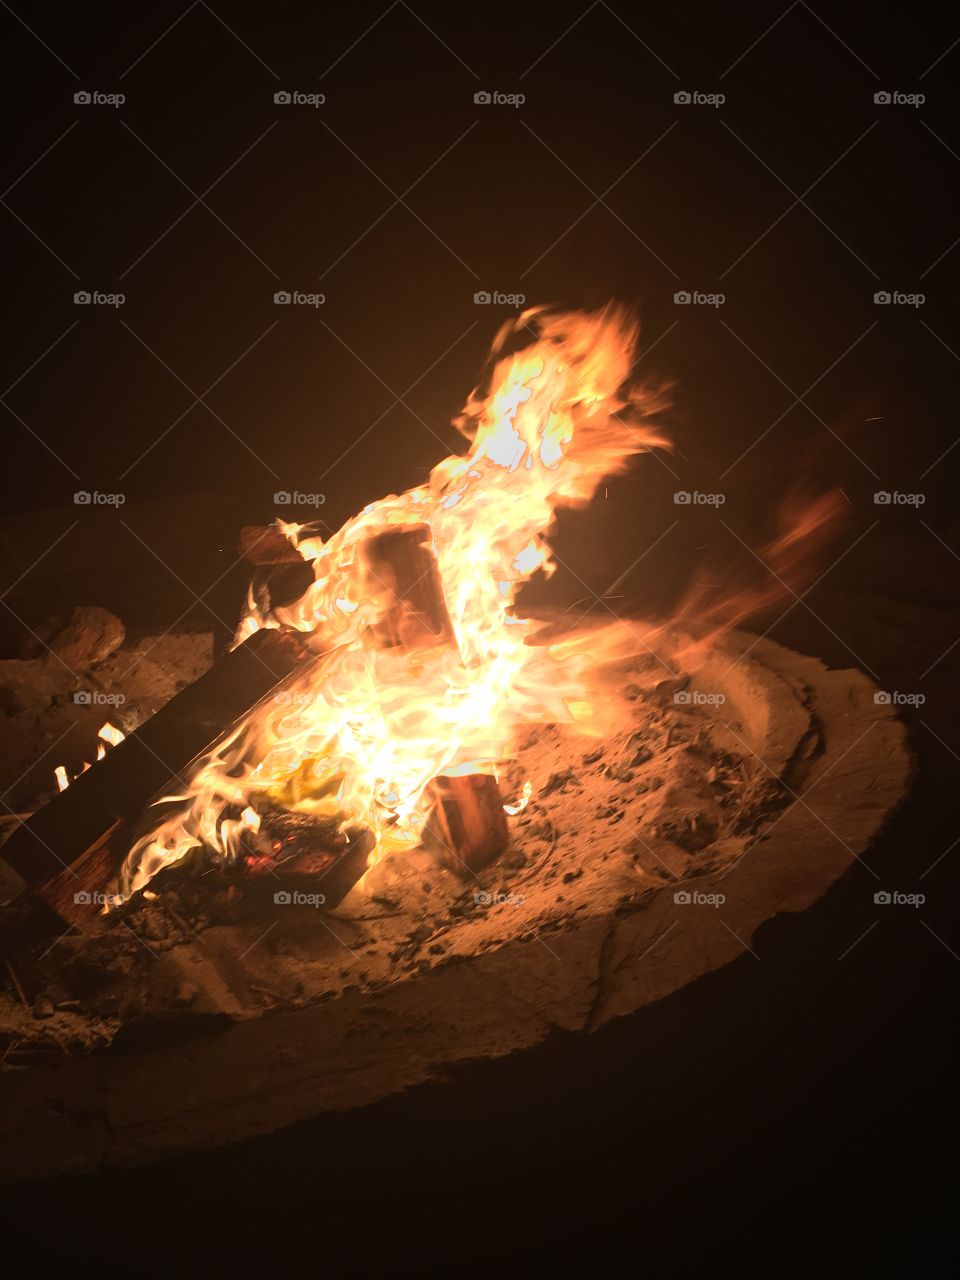 Little night beach bonfire, CA